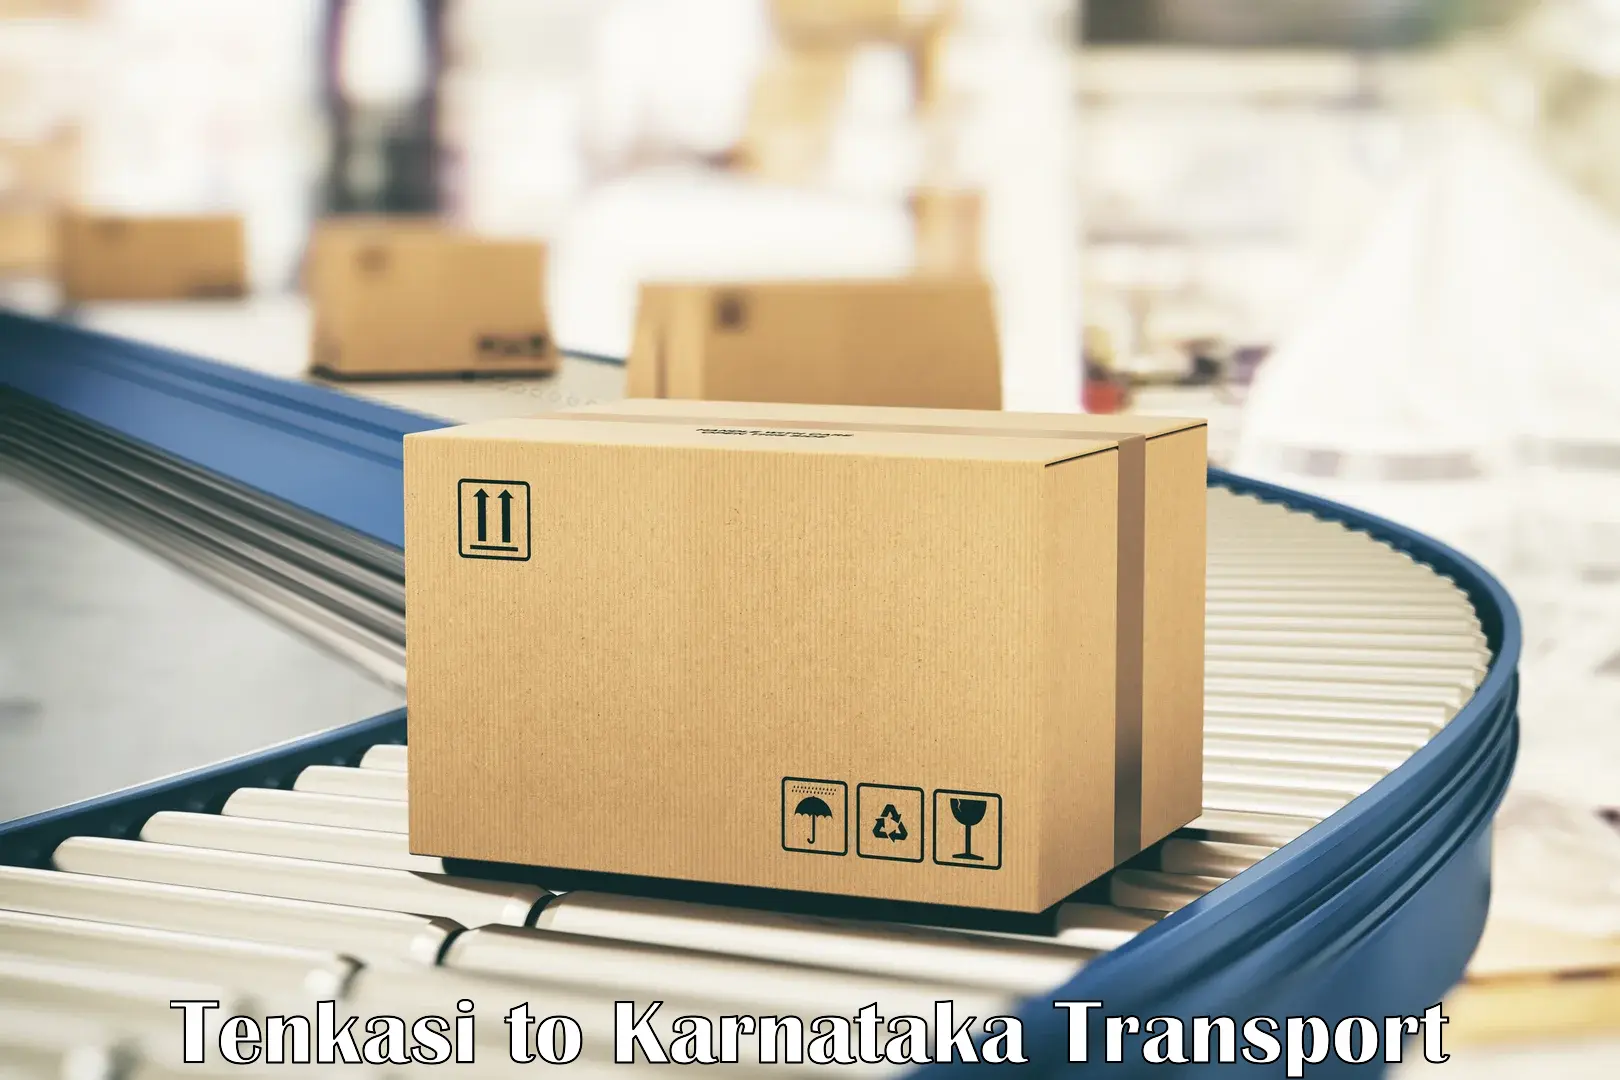 Furniture transport service in Tenkasi to Yelburga